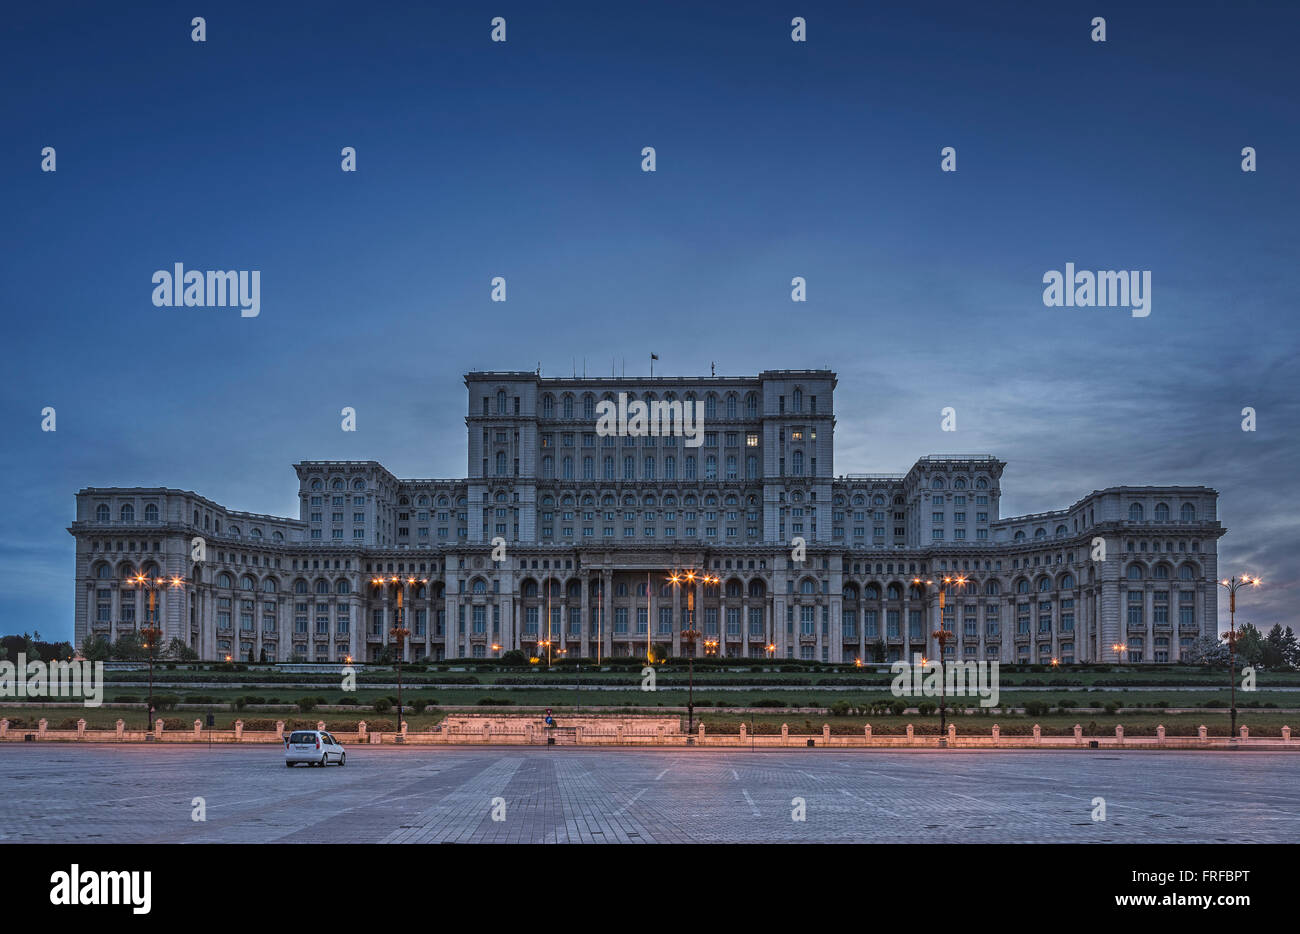 Bucharest, Romania - June 06, 2013: The famous Palace of the Parliament (Palatul Parlamentului), People's House (Casa Poporului) Stock Photo